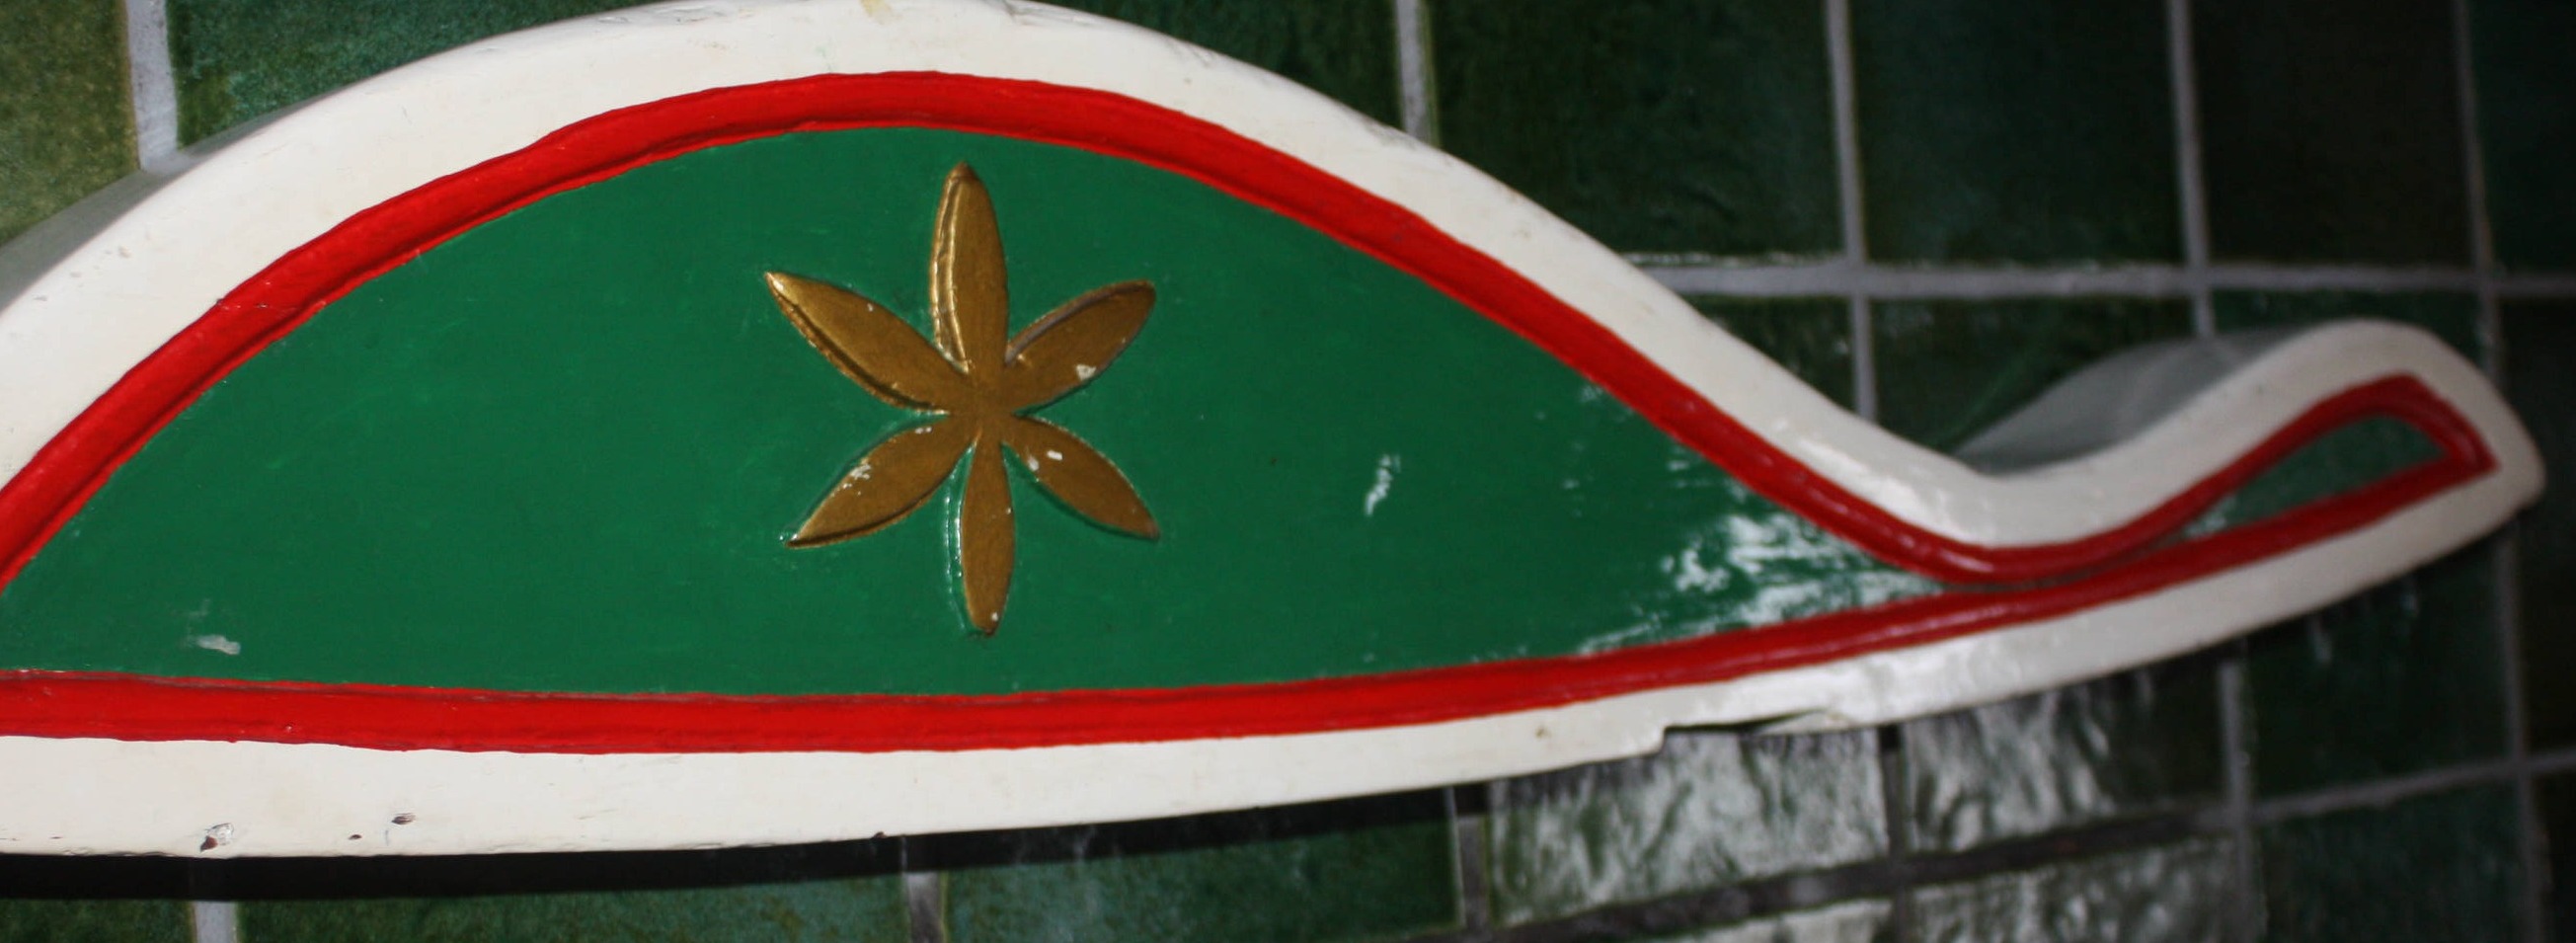 Alte bemalte Ruderpinne von einem Segelschiff, Länge 107 cm, Höhe 21 cm, Breite 9 cm